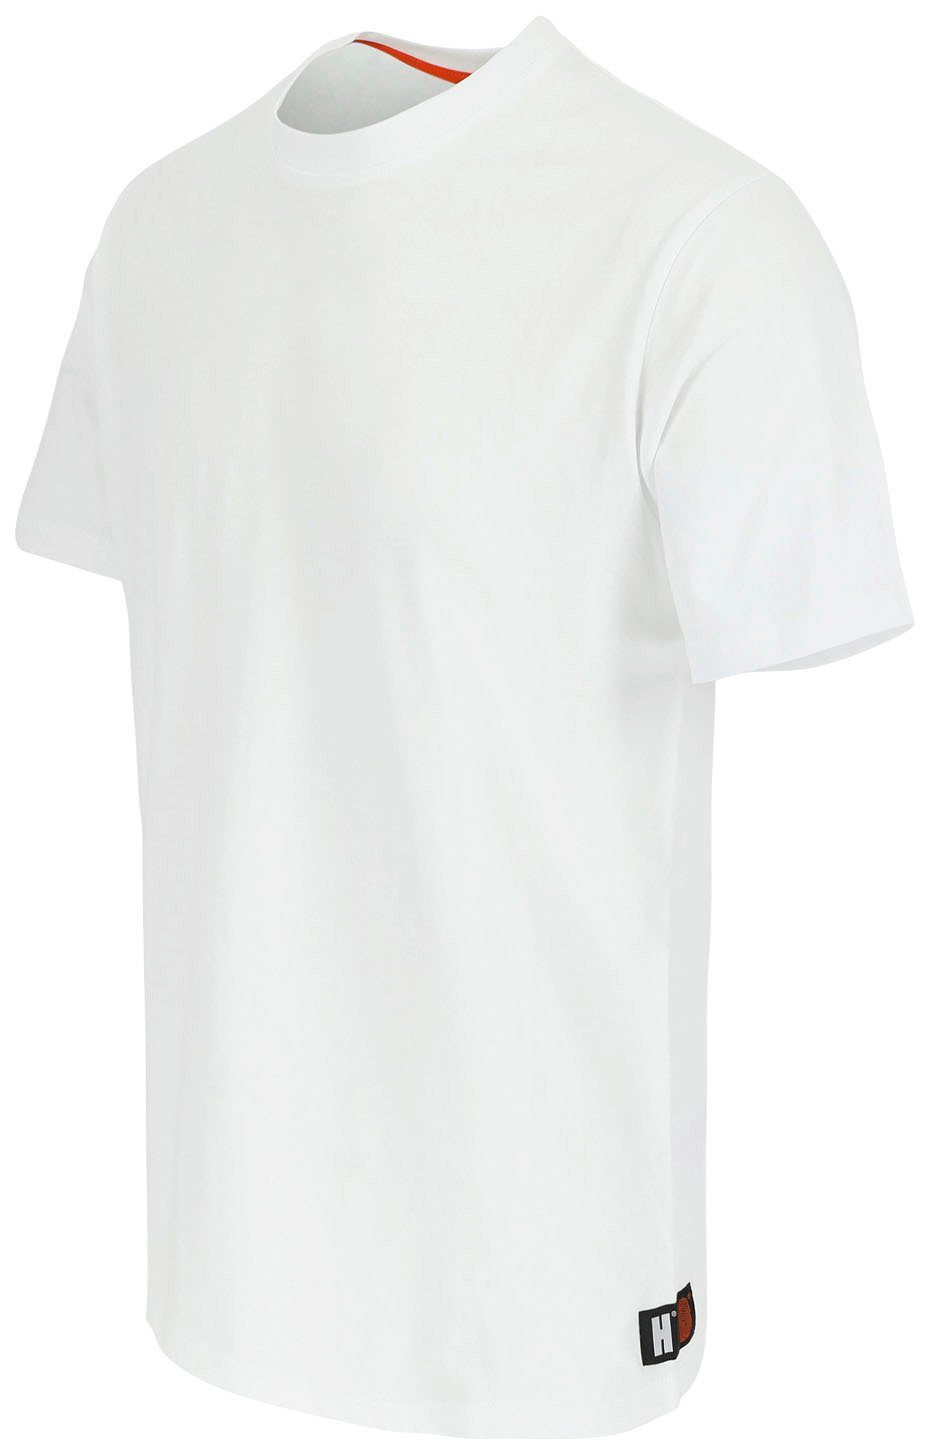 kurze Herock®-Aufdruck, T-Shirt Ärmel T-Shirt weiß Rippstrickkragen Herock kurze Rundhalsausschnitt, Callius Ärmel,